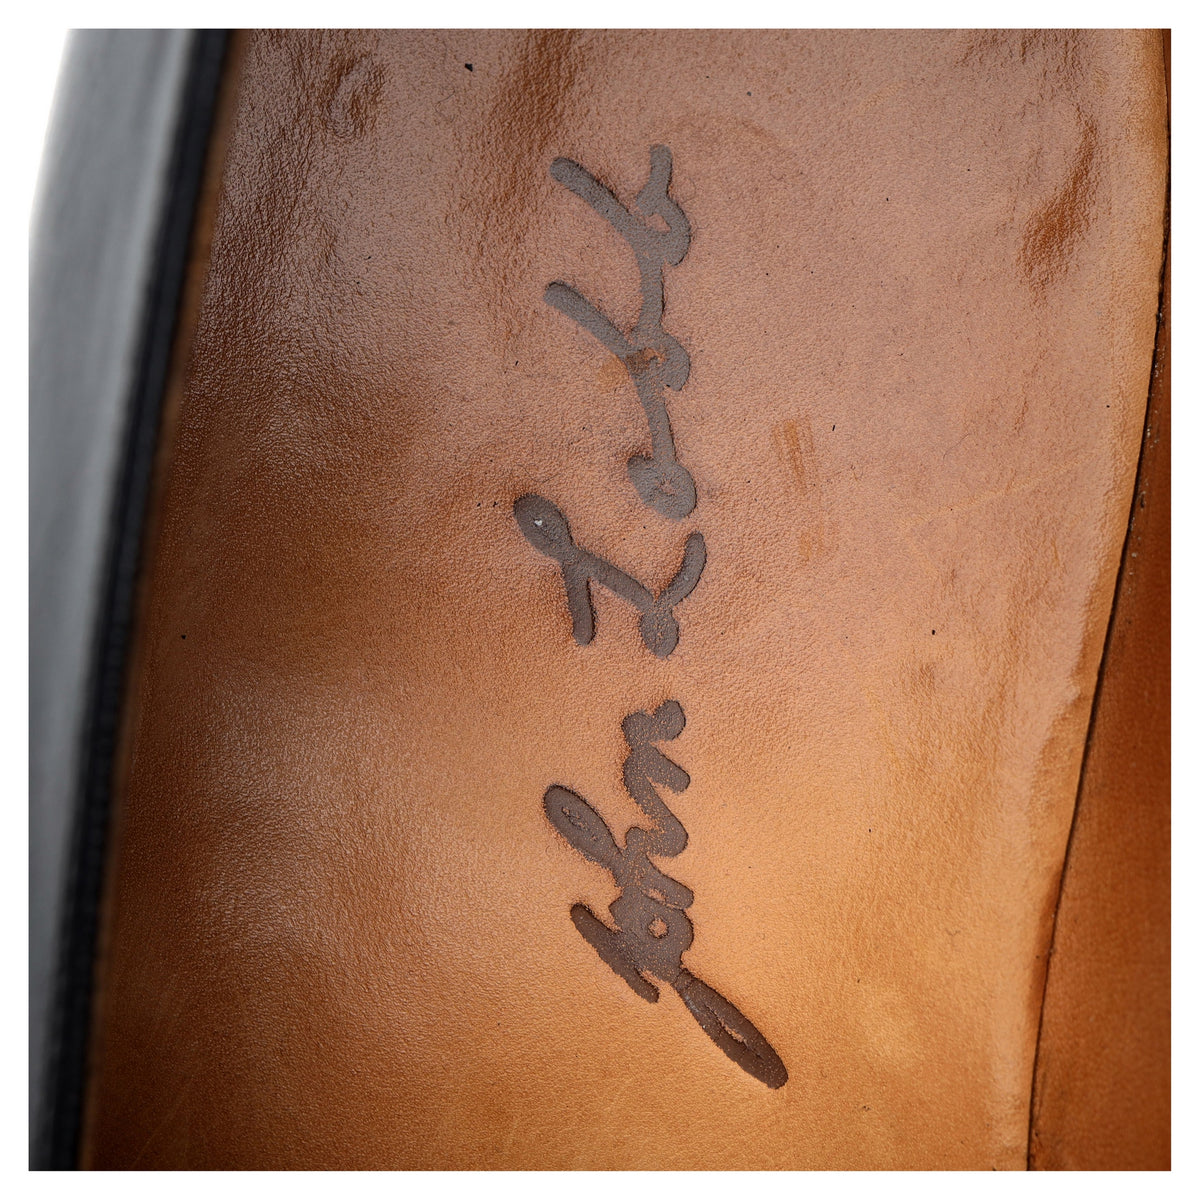 Bespoke Black Leather Monk Loafers UK 9.5 / UK 10